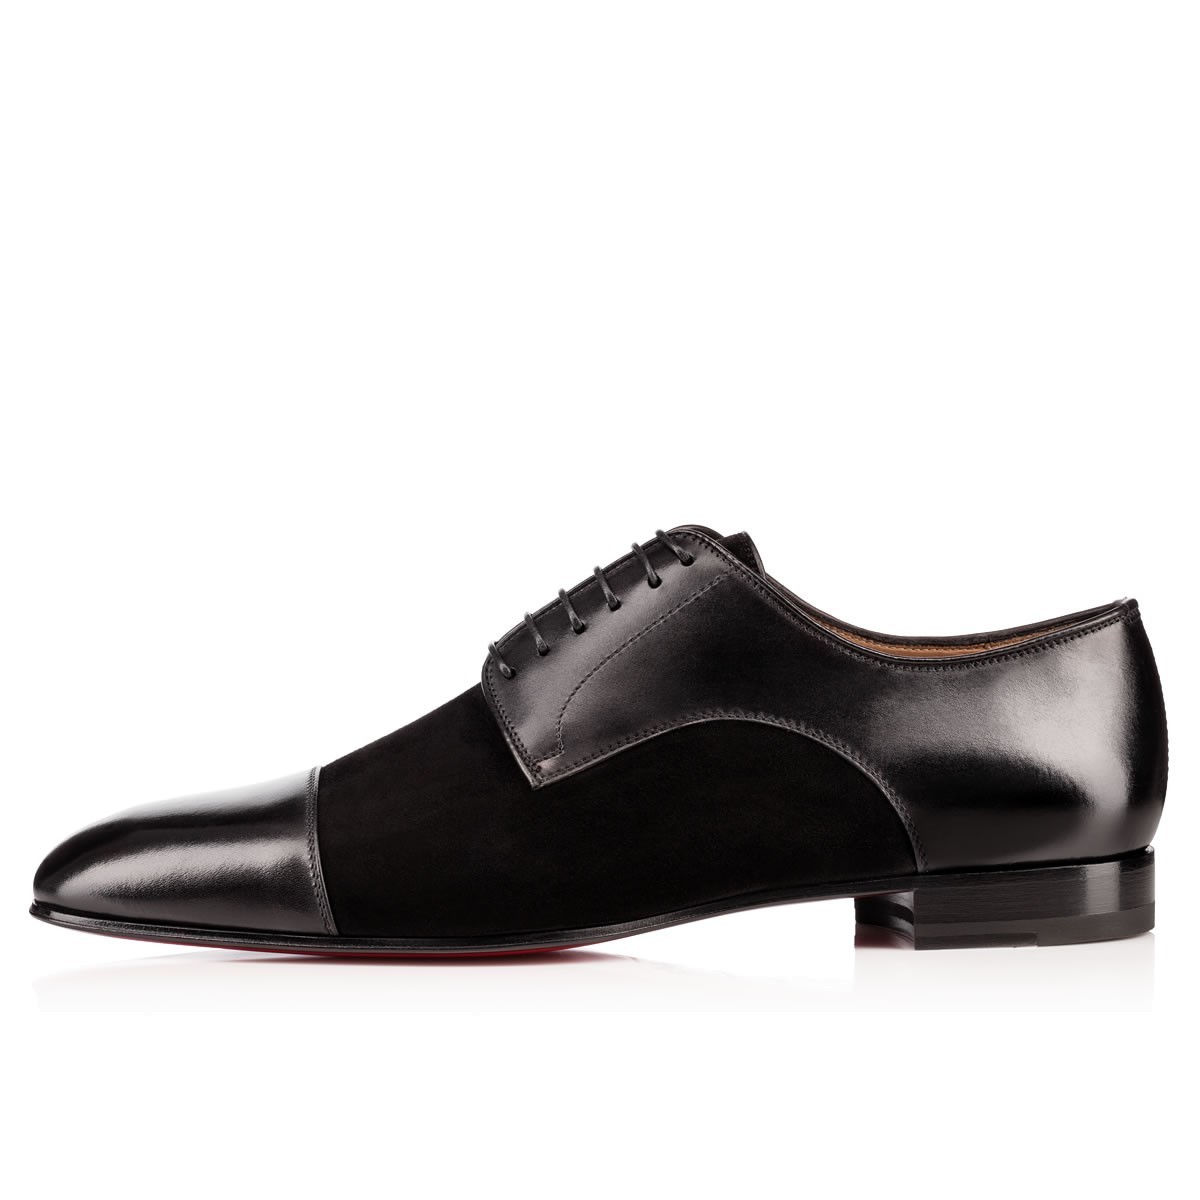 Handmade men Black color suede and leather formal shoes,Men black dress ...